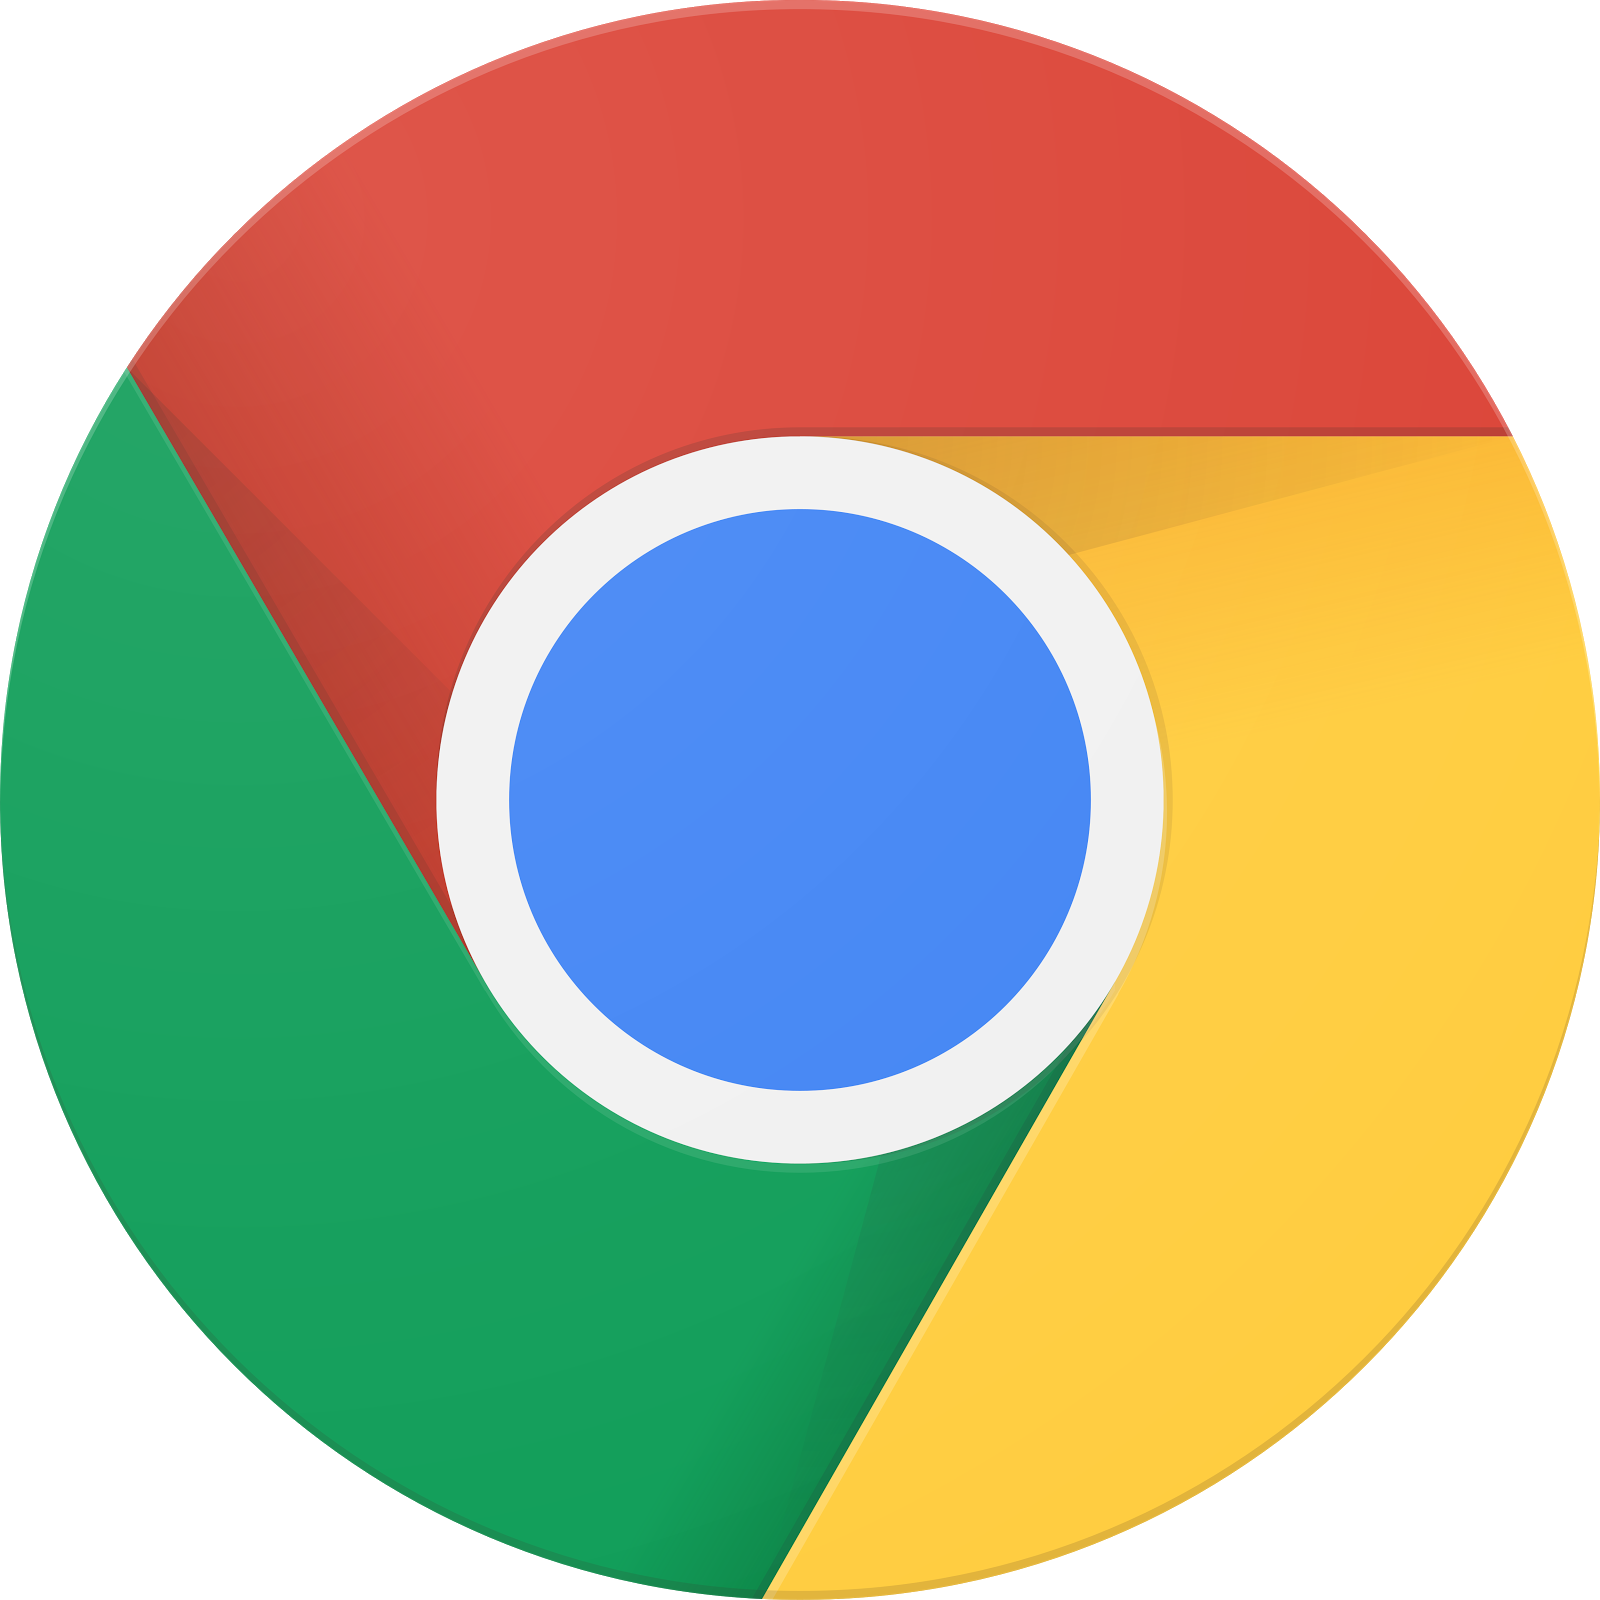 โลโก้ Google Chrome